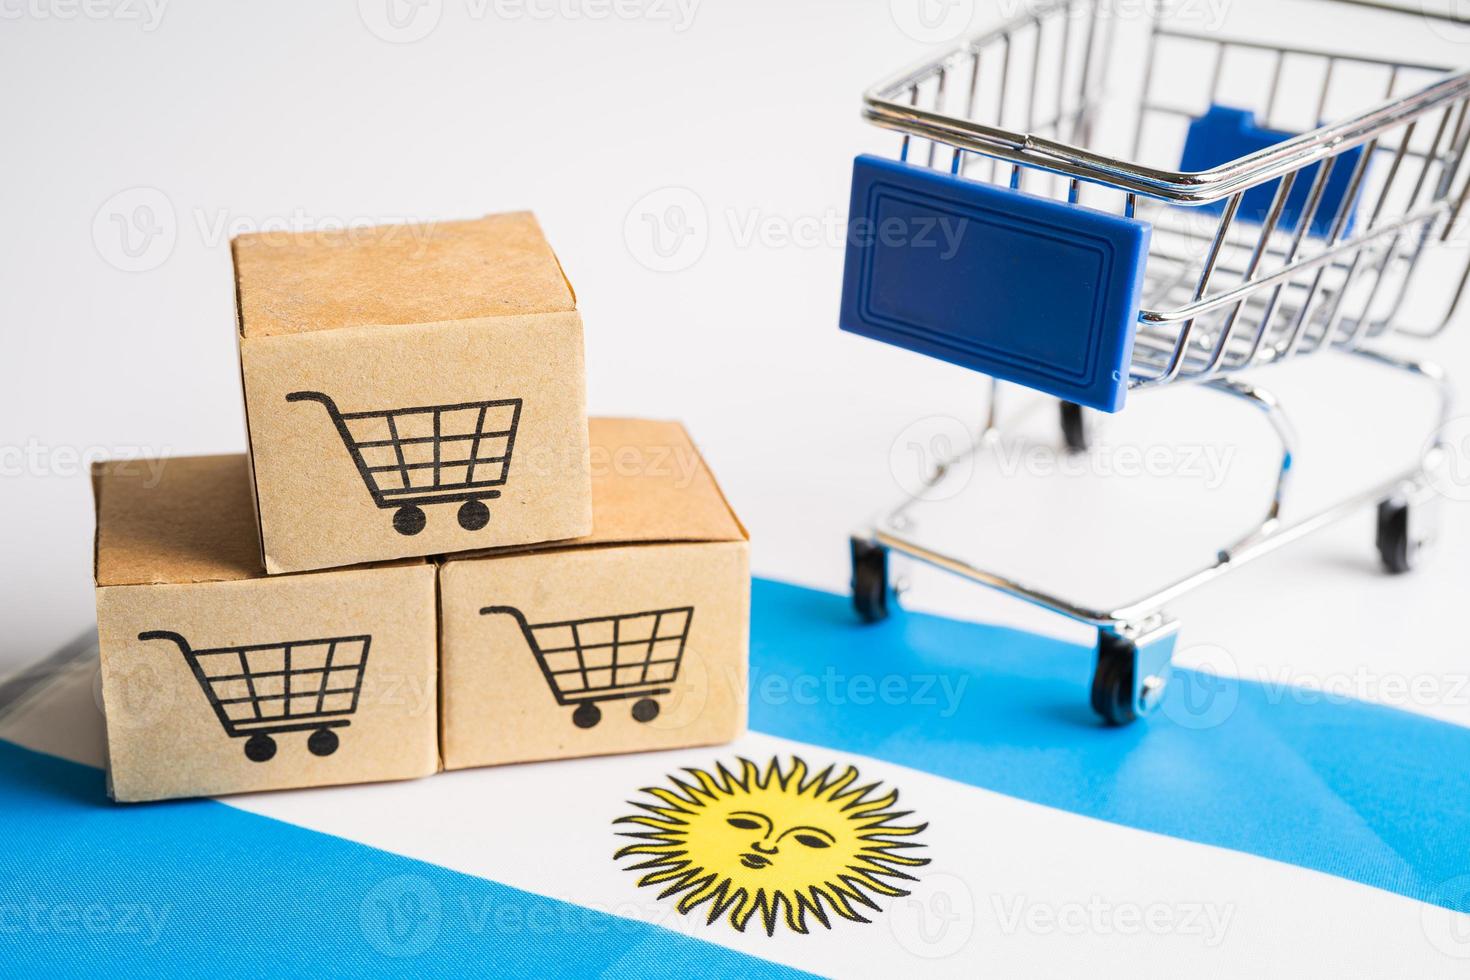 Box mit Einkaufswagen-Logo und Argentinien-Flagge, Import-Export-Shopping online oder E-Commerce-Finanzierungslieferservice-Shop-Produktversand, Handel, Lieferantenkonzept. foto